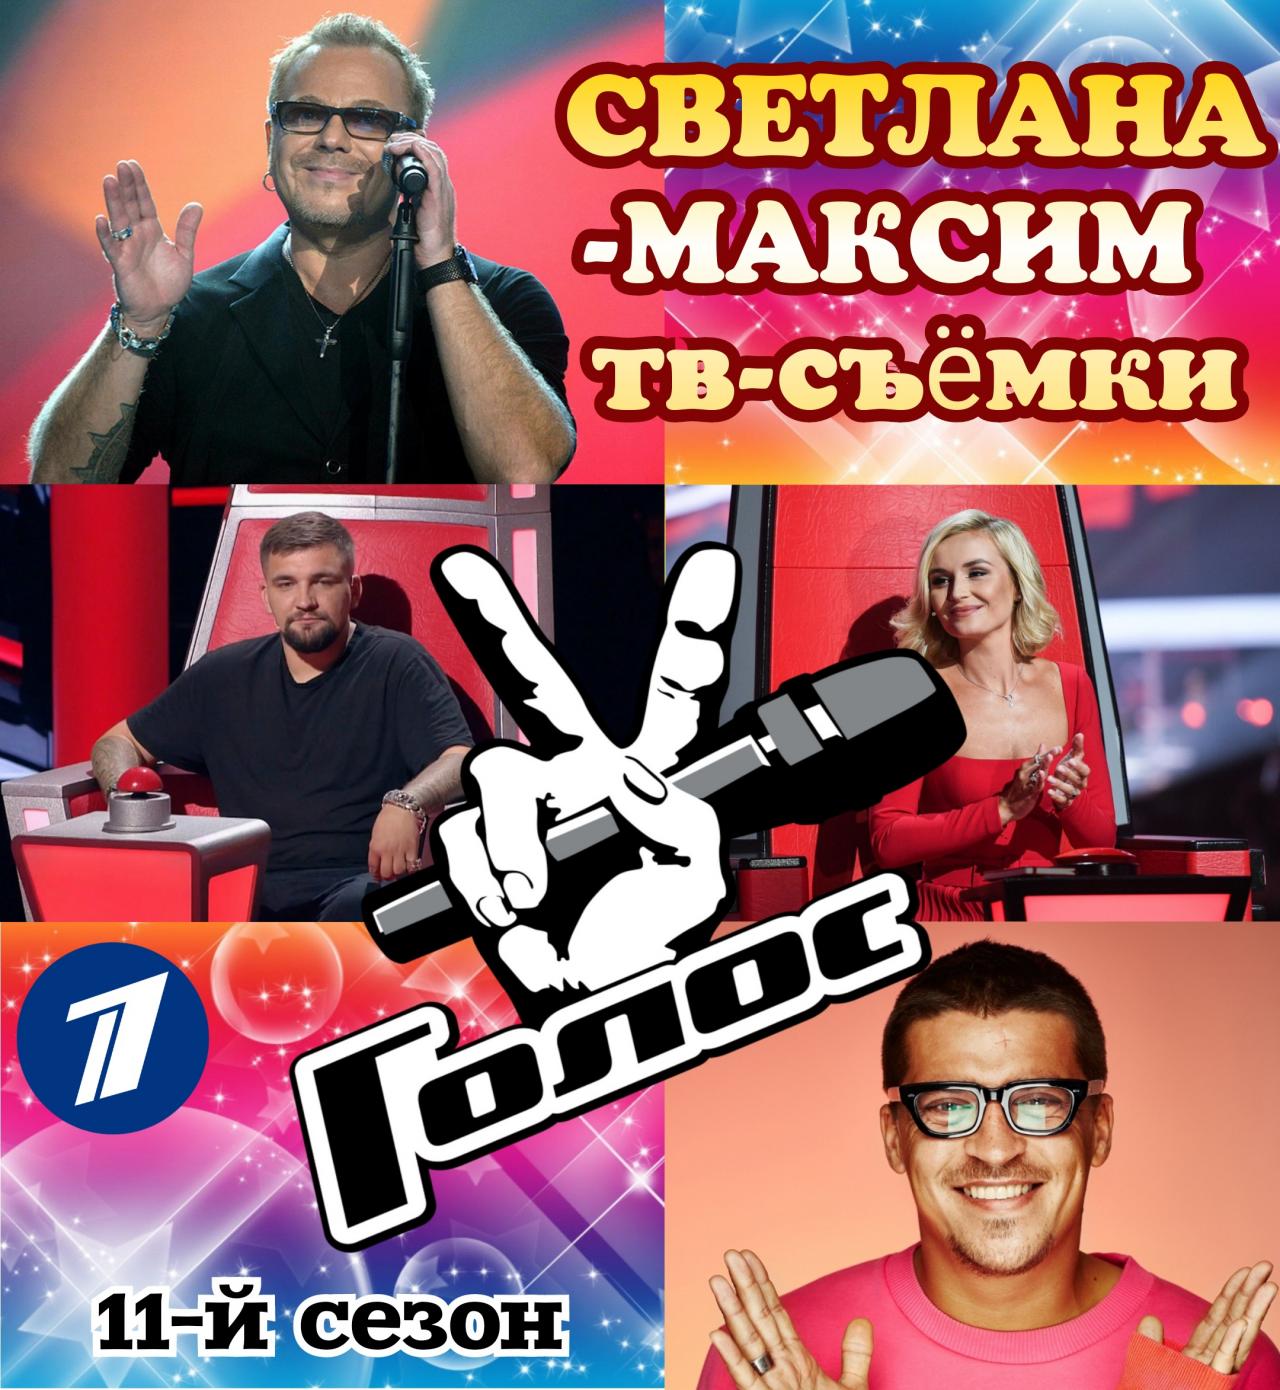 15 марта музыкальное супер-шоу "ГОЛОС 11".